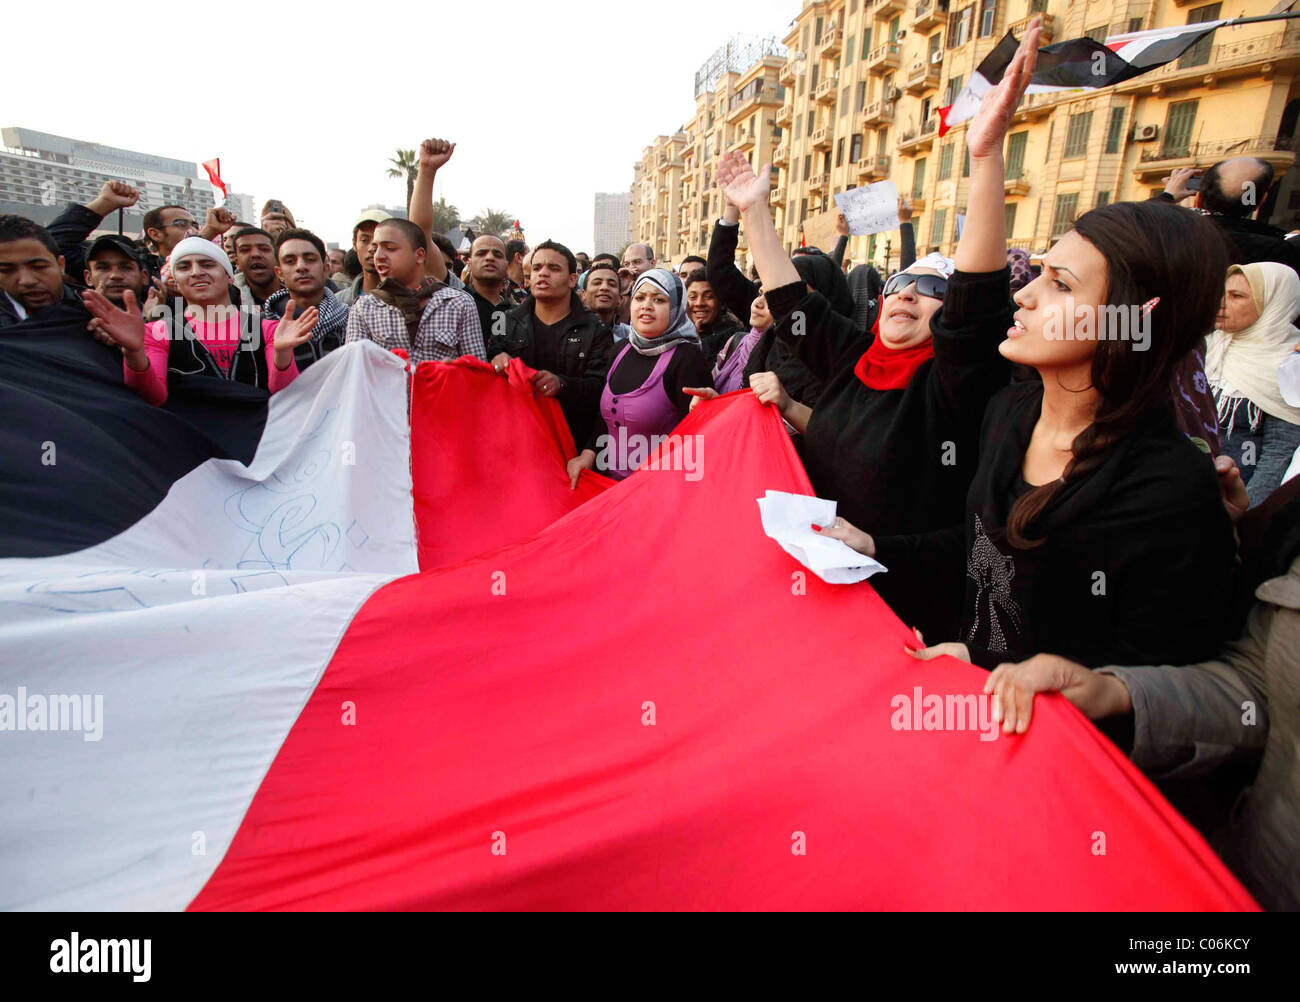 Disordini civili Piazza Tahrir al Cairo, Egitto, 1 feb 2011. Migliaia di persone sono state protestando contro il Presidente egiziano Hosni Mubarak Foto Stock